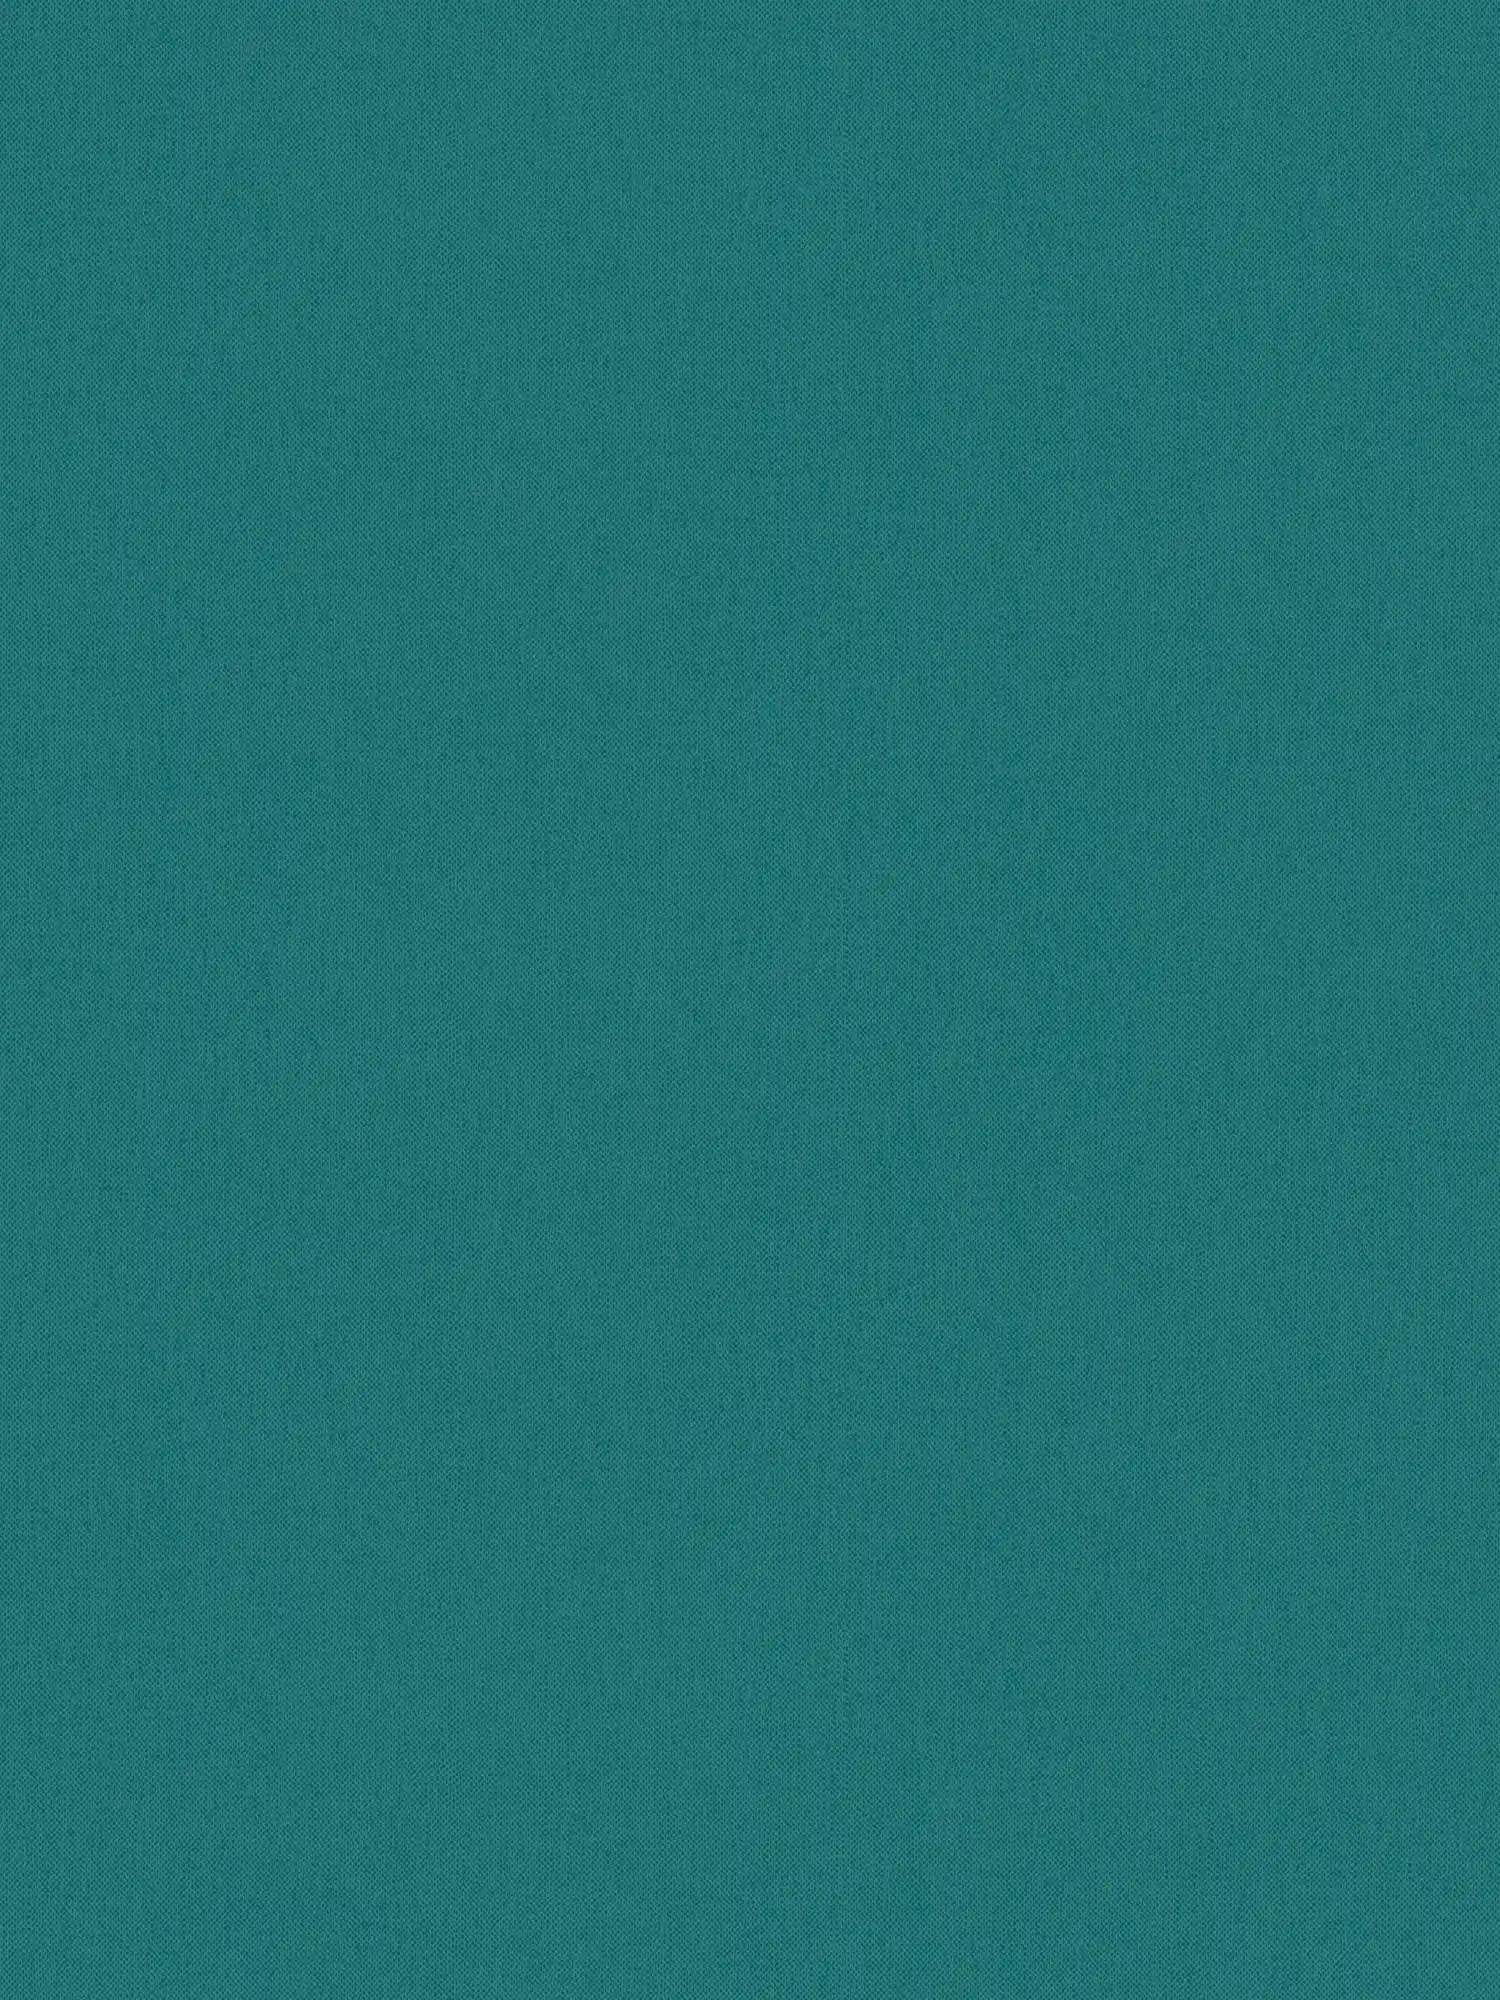 Carta da parati verde scuro con struttura tessile opaca tinta unita blu acqua
